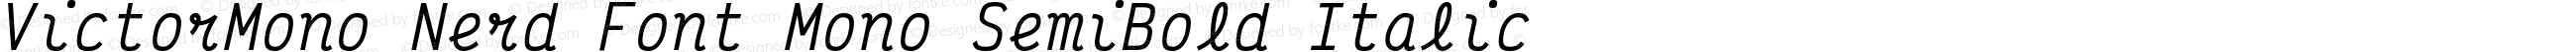 Victor Mono SemiBold Italic Nerd Font Complete Mono